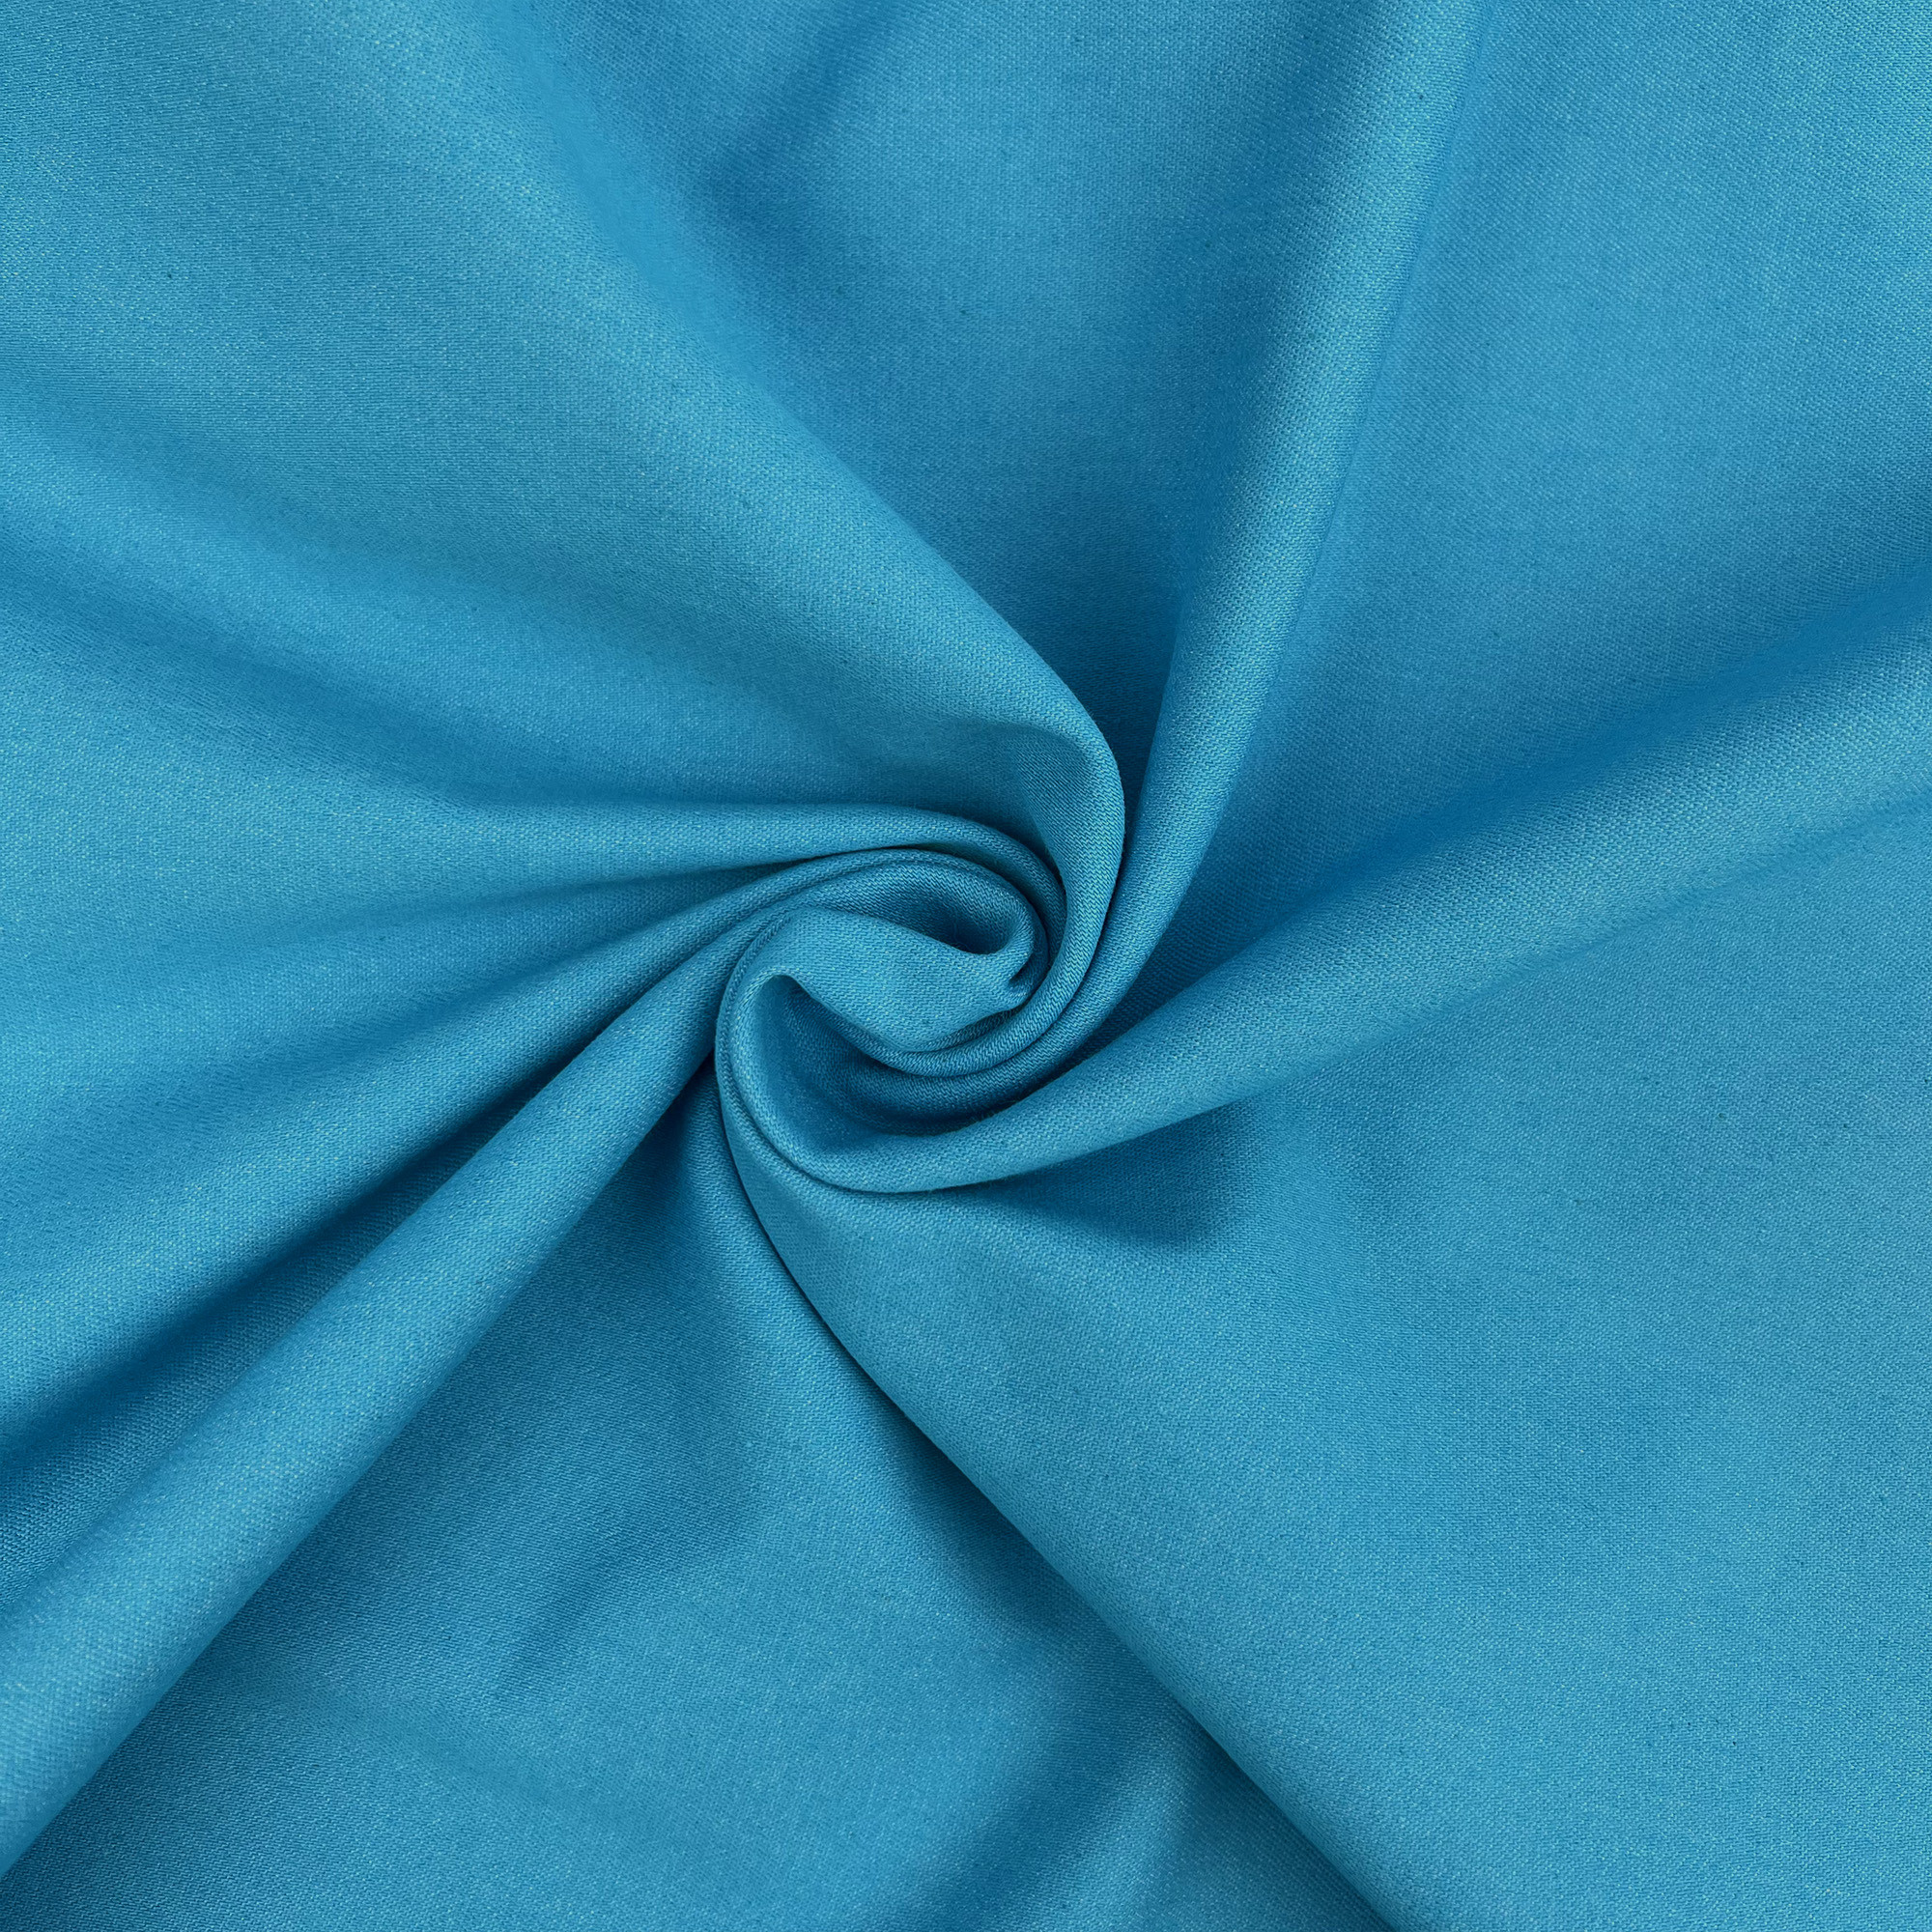 Tessuto al metro di Jeans elasticizzato H 140cm, v. Blu